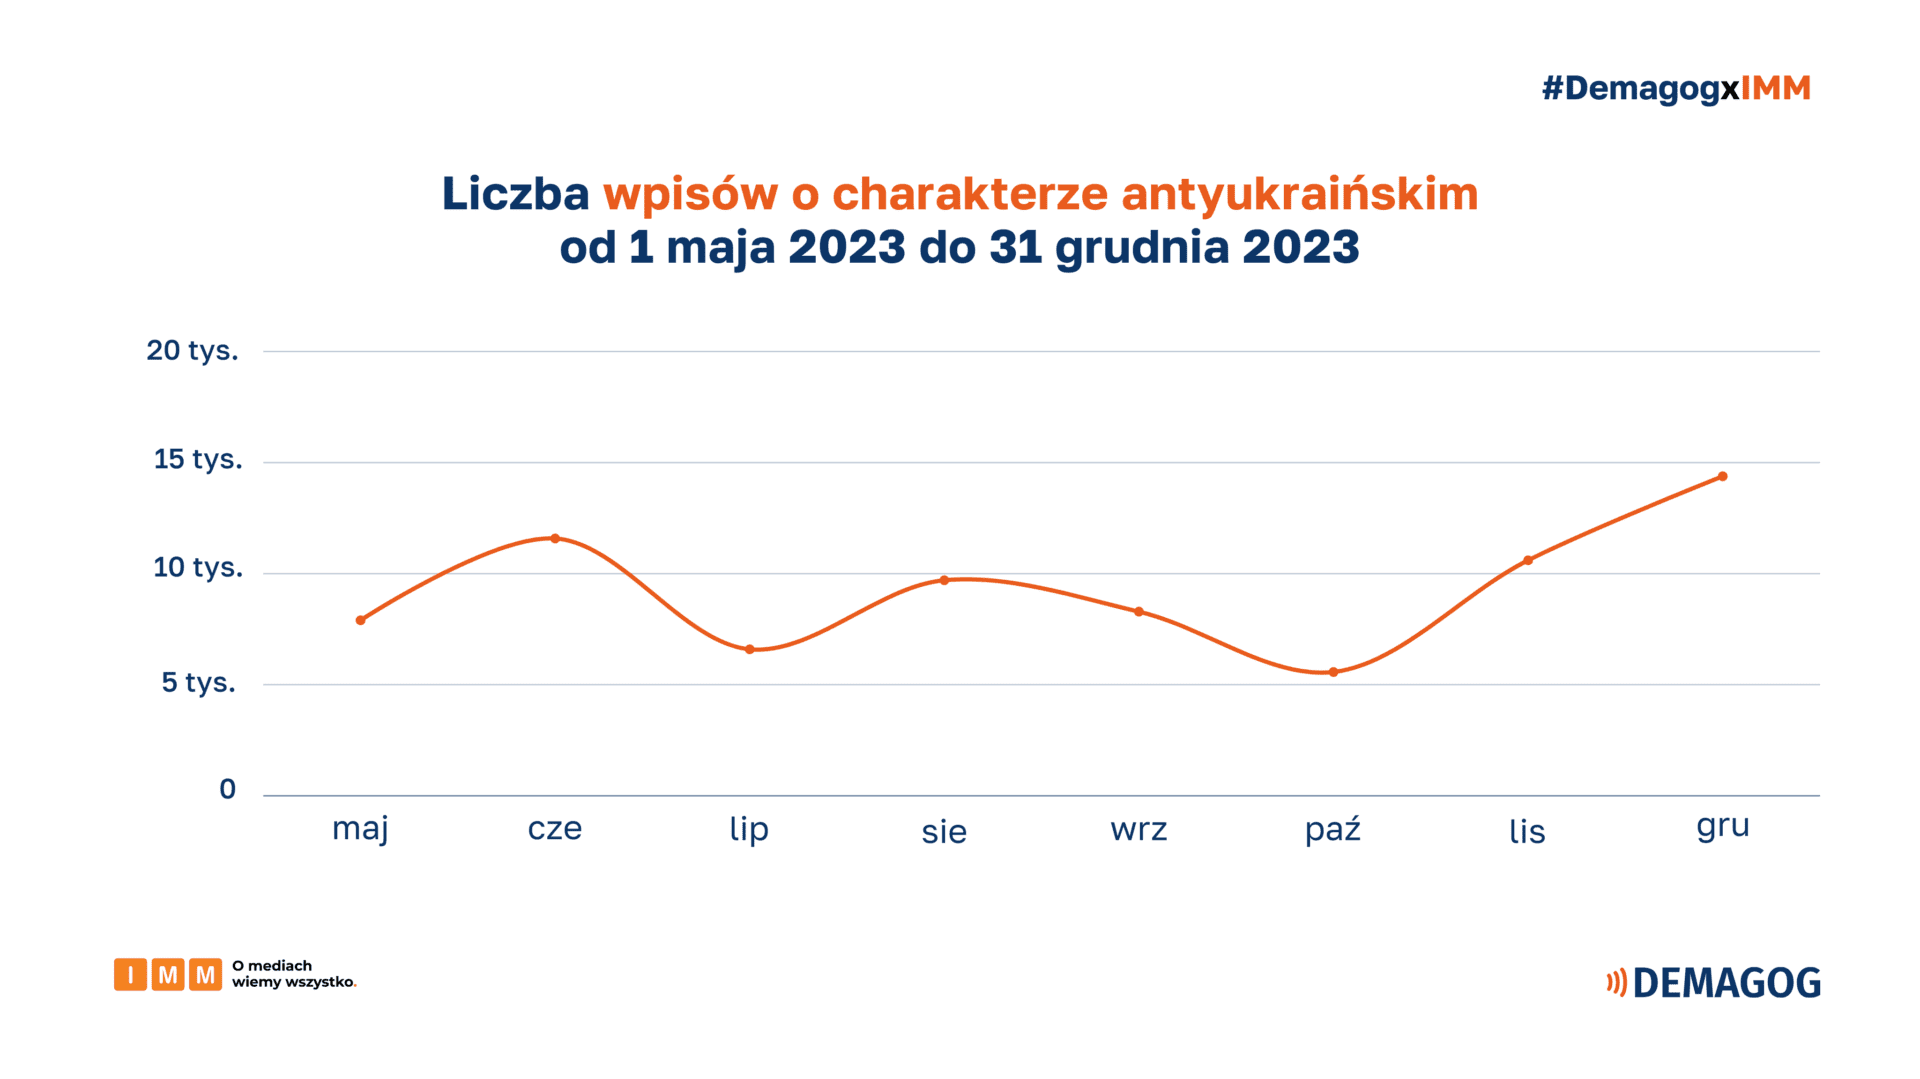 Wykres przedstawia liczbę wpisów o charakterze antyukraińskim od 1 maja do 31 grudnia 2023.